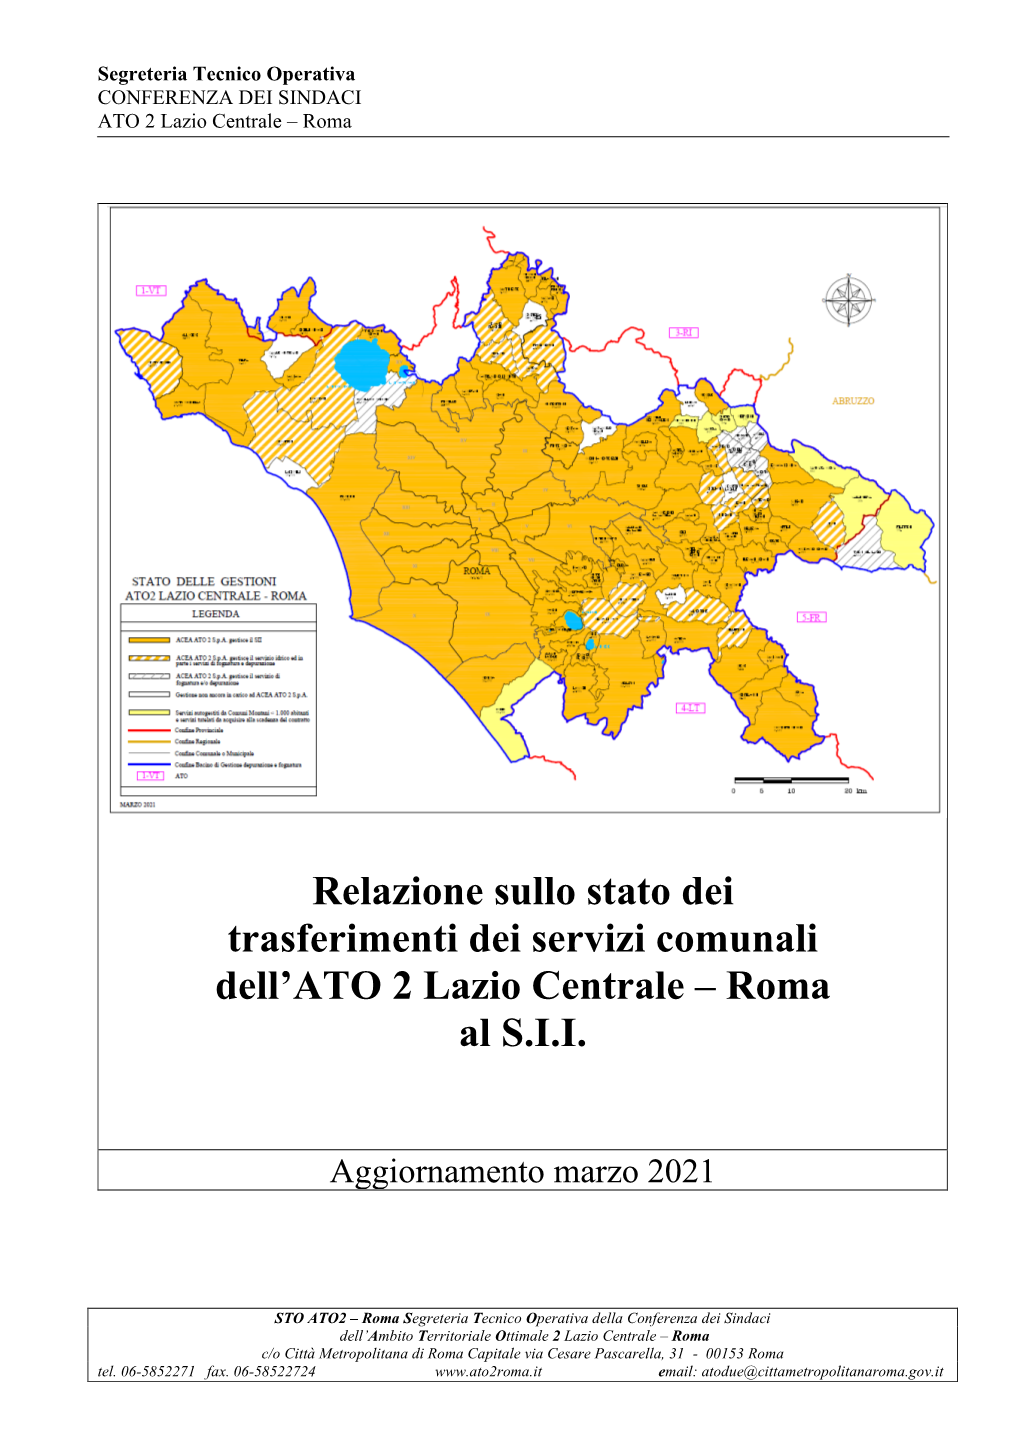 Relazione Sullo Stato Dei Trasferimenti Dei Servizi Comunali Dell’ATO 2 Lazio Centrale – Roma Al S.I.I